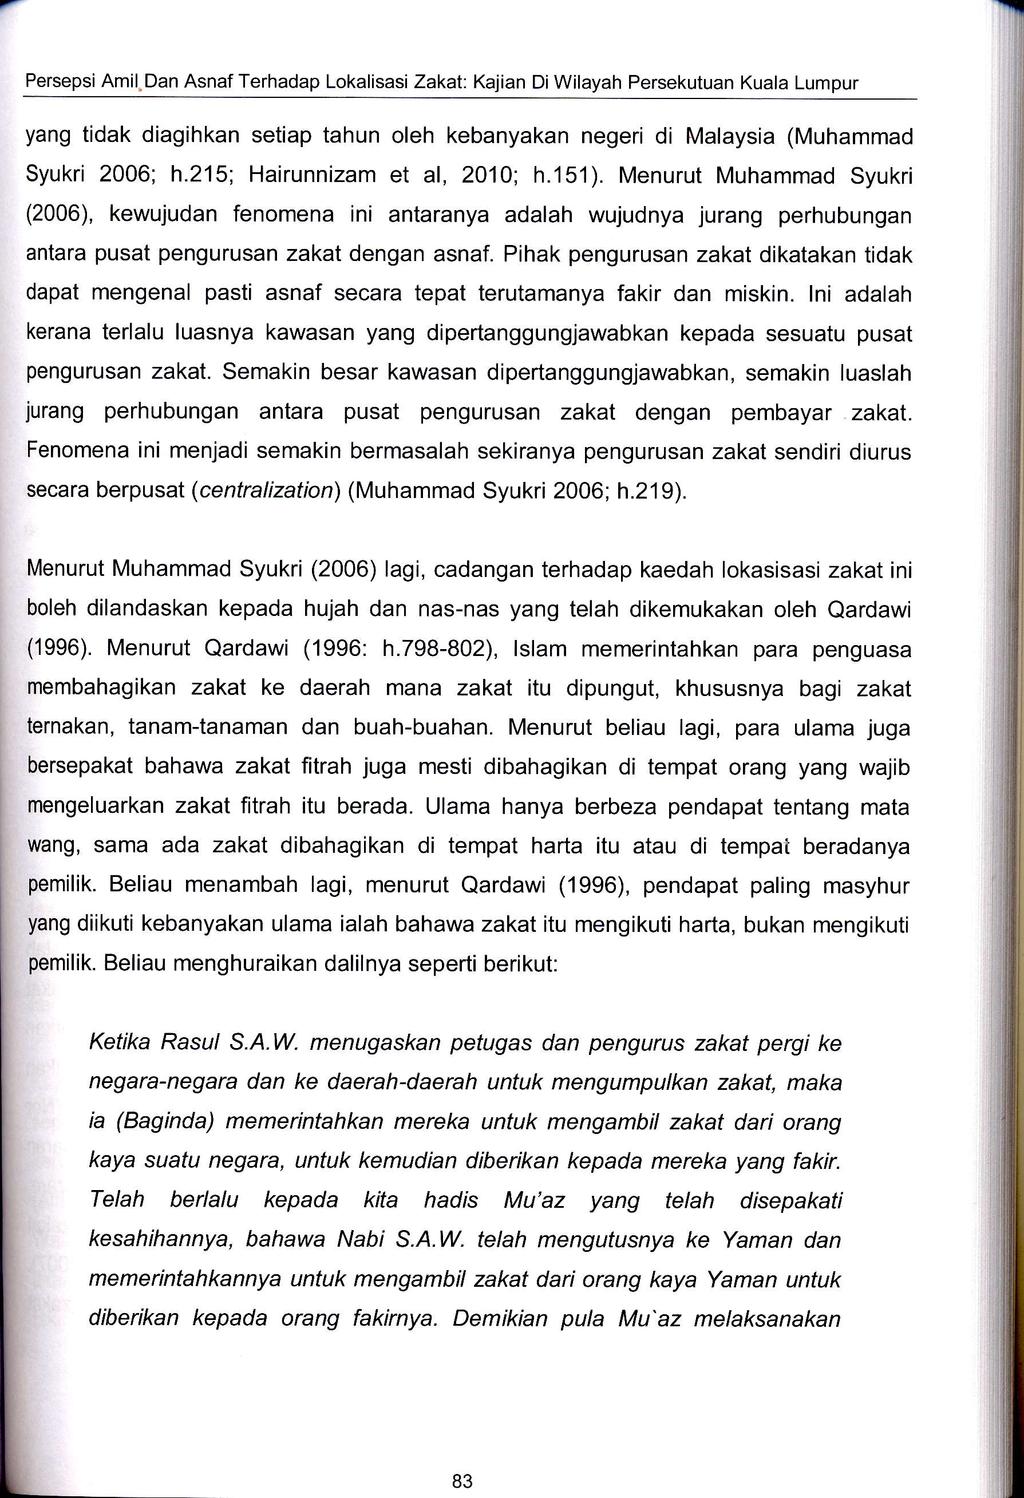 Persepsi Amil.Dan Asnaf Terhadap Lokalisasi Zakat: Kqian Di Wilayah Persekutuan Kuala Lumpur yang tidak diagihkan setiap tahun oleh kebanyaka negeri di Malaysia (Muhammad Syukri 2006; h.